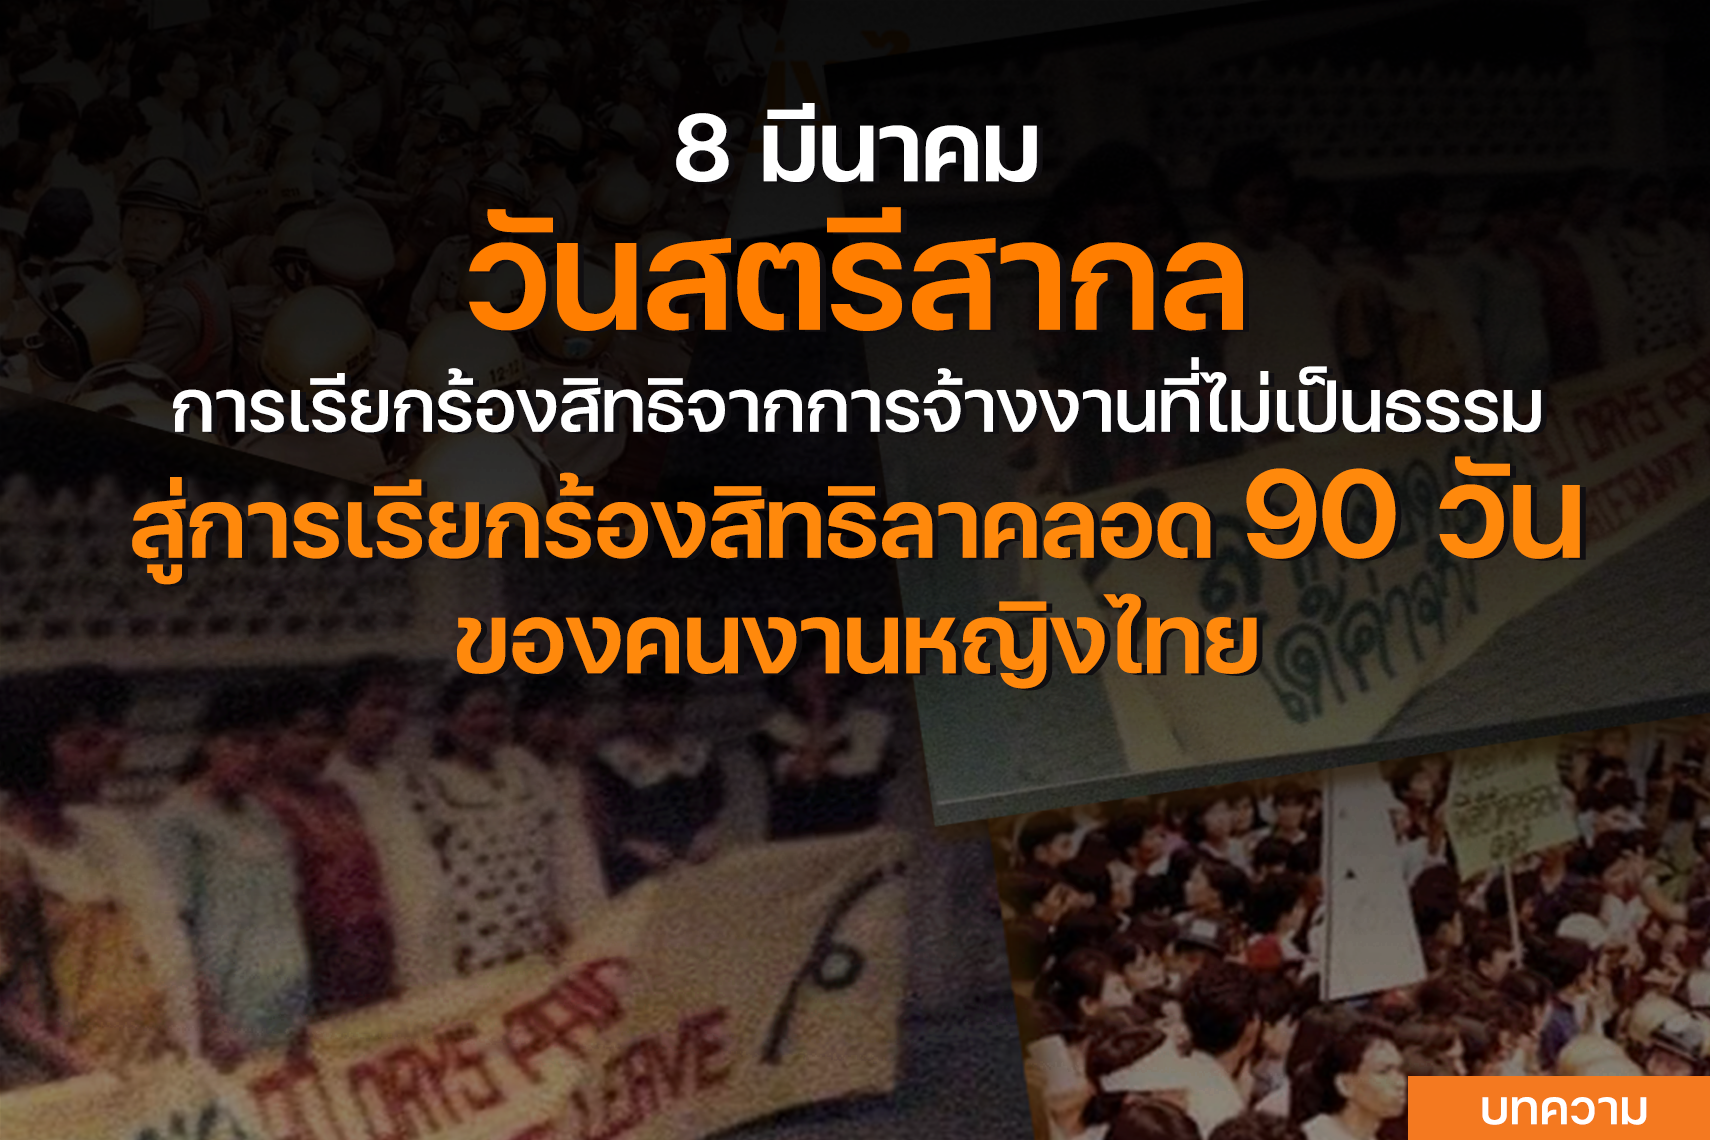 8 มีนาคม วันสตรีสากล การเรียกร้องสิทธิการจ้างงานที่ไม่เป็นธรรม สู่การเรียกร้องสิทธิลาคลอด 90 วัน ของคนงานหญิงไทย